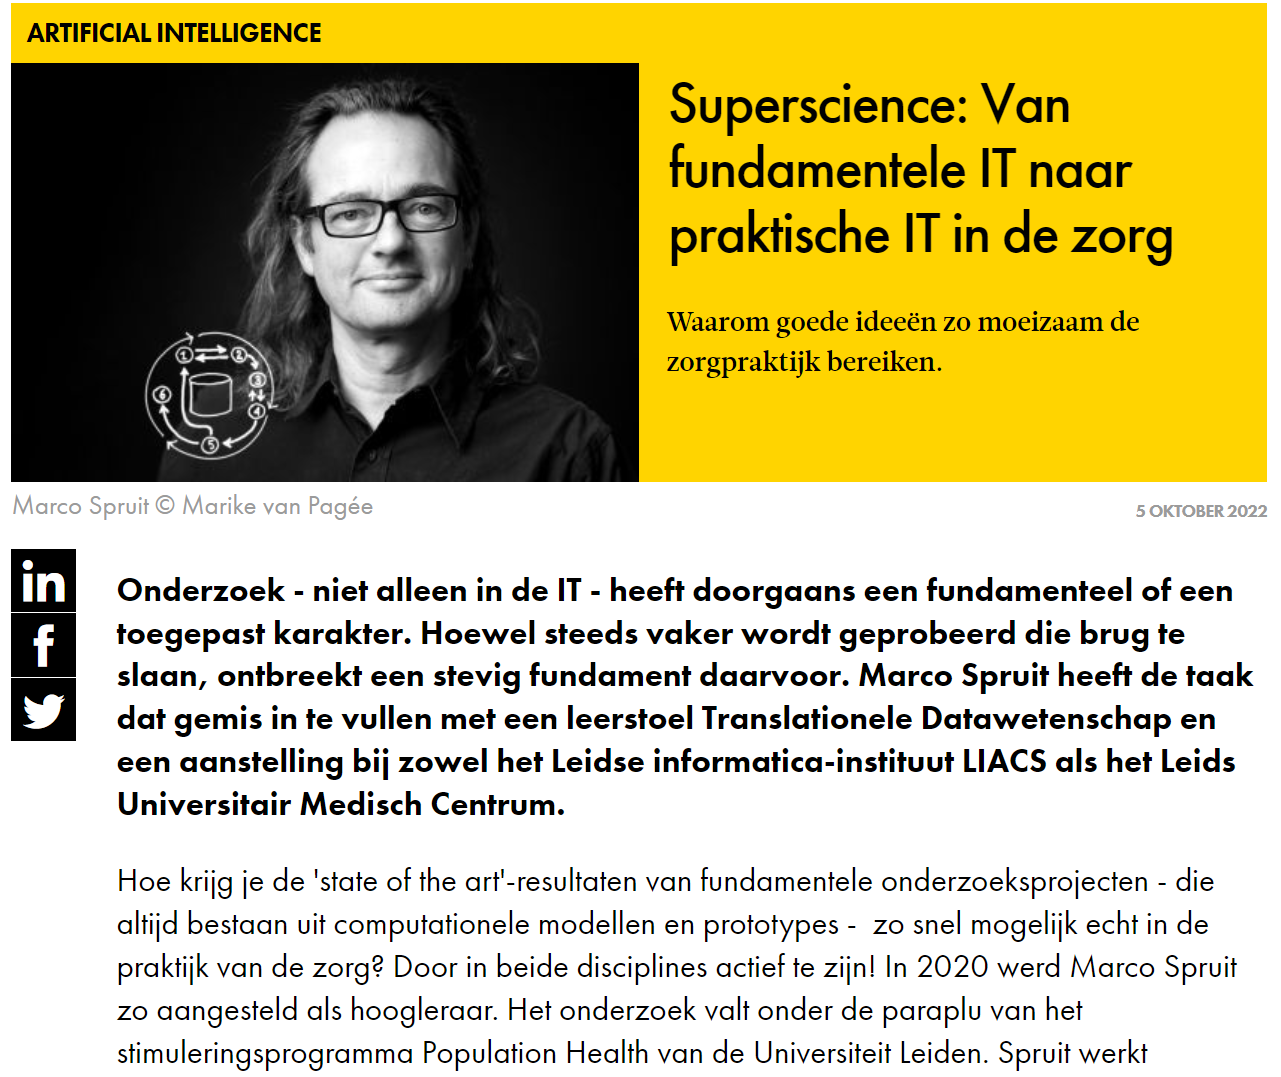 https://www.agconnect.nl/artikel/superscience-van-fundamentele-it-naar-praktische-it-de-zorg